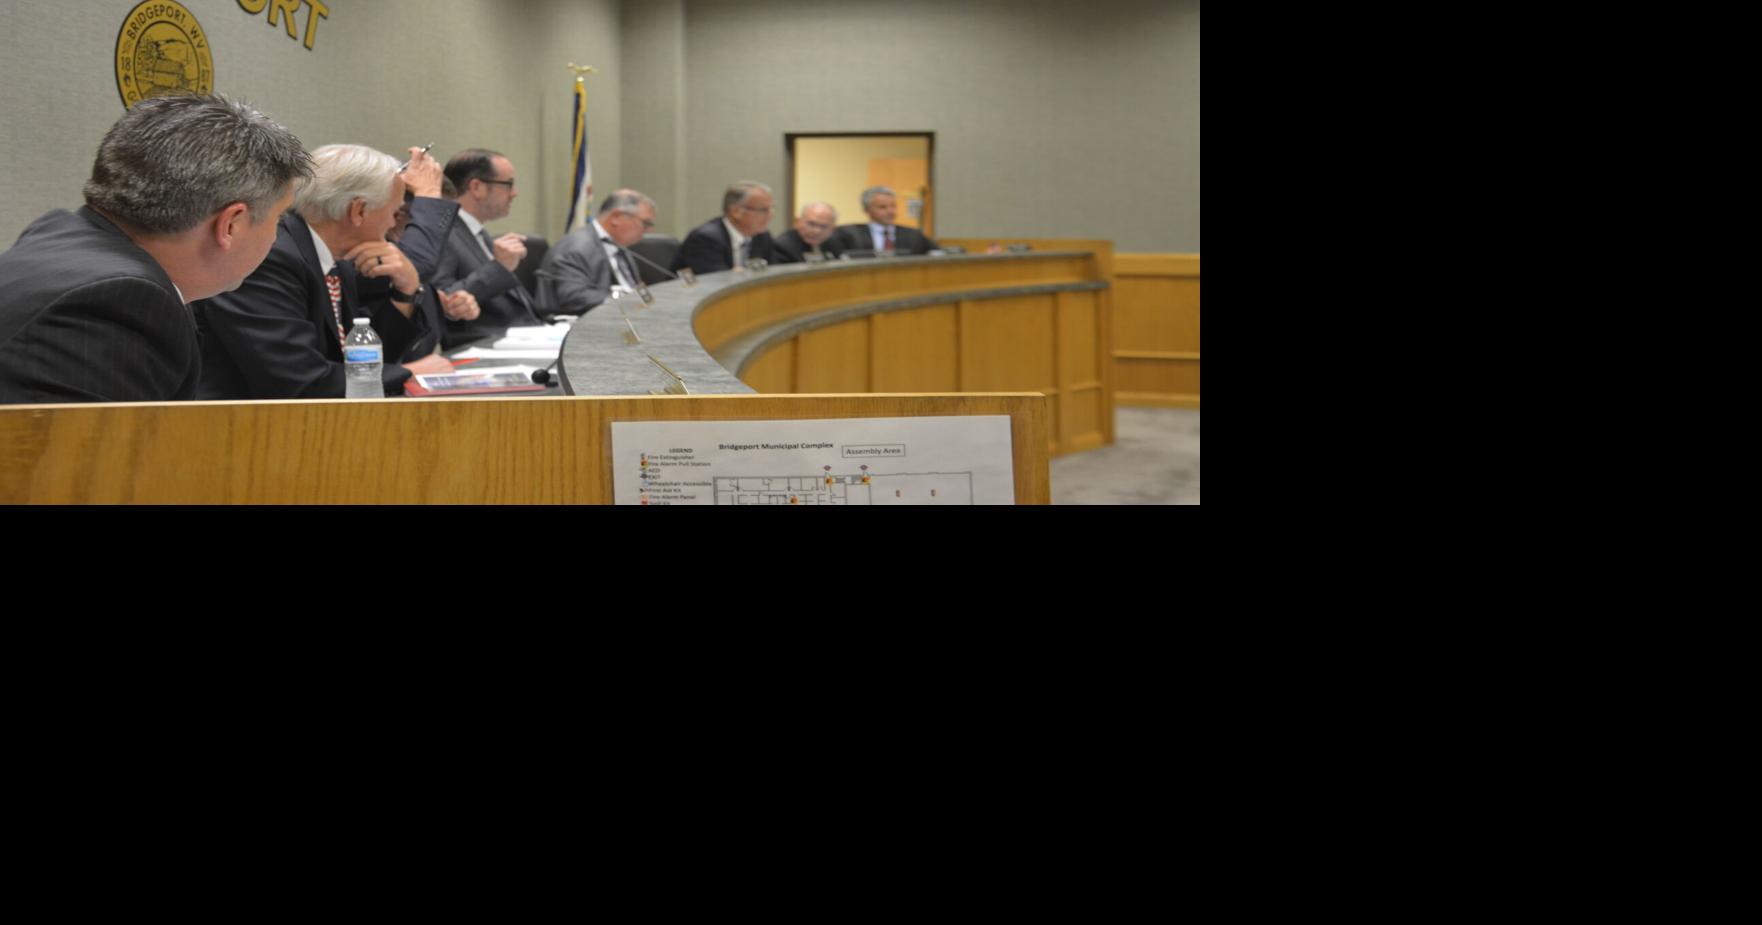 Bridgeport (West Virginia) City Council enacts ordinances